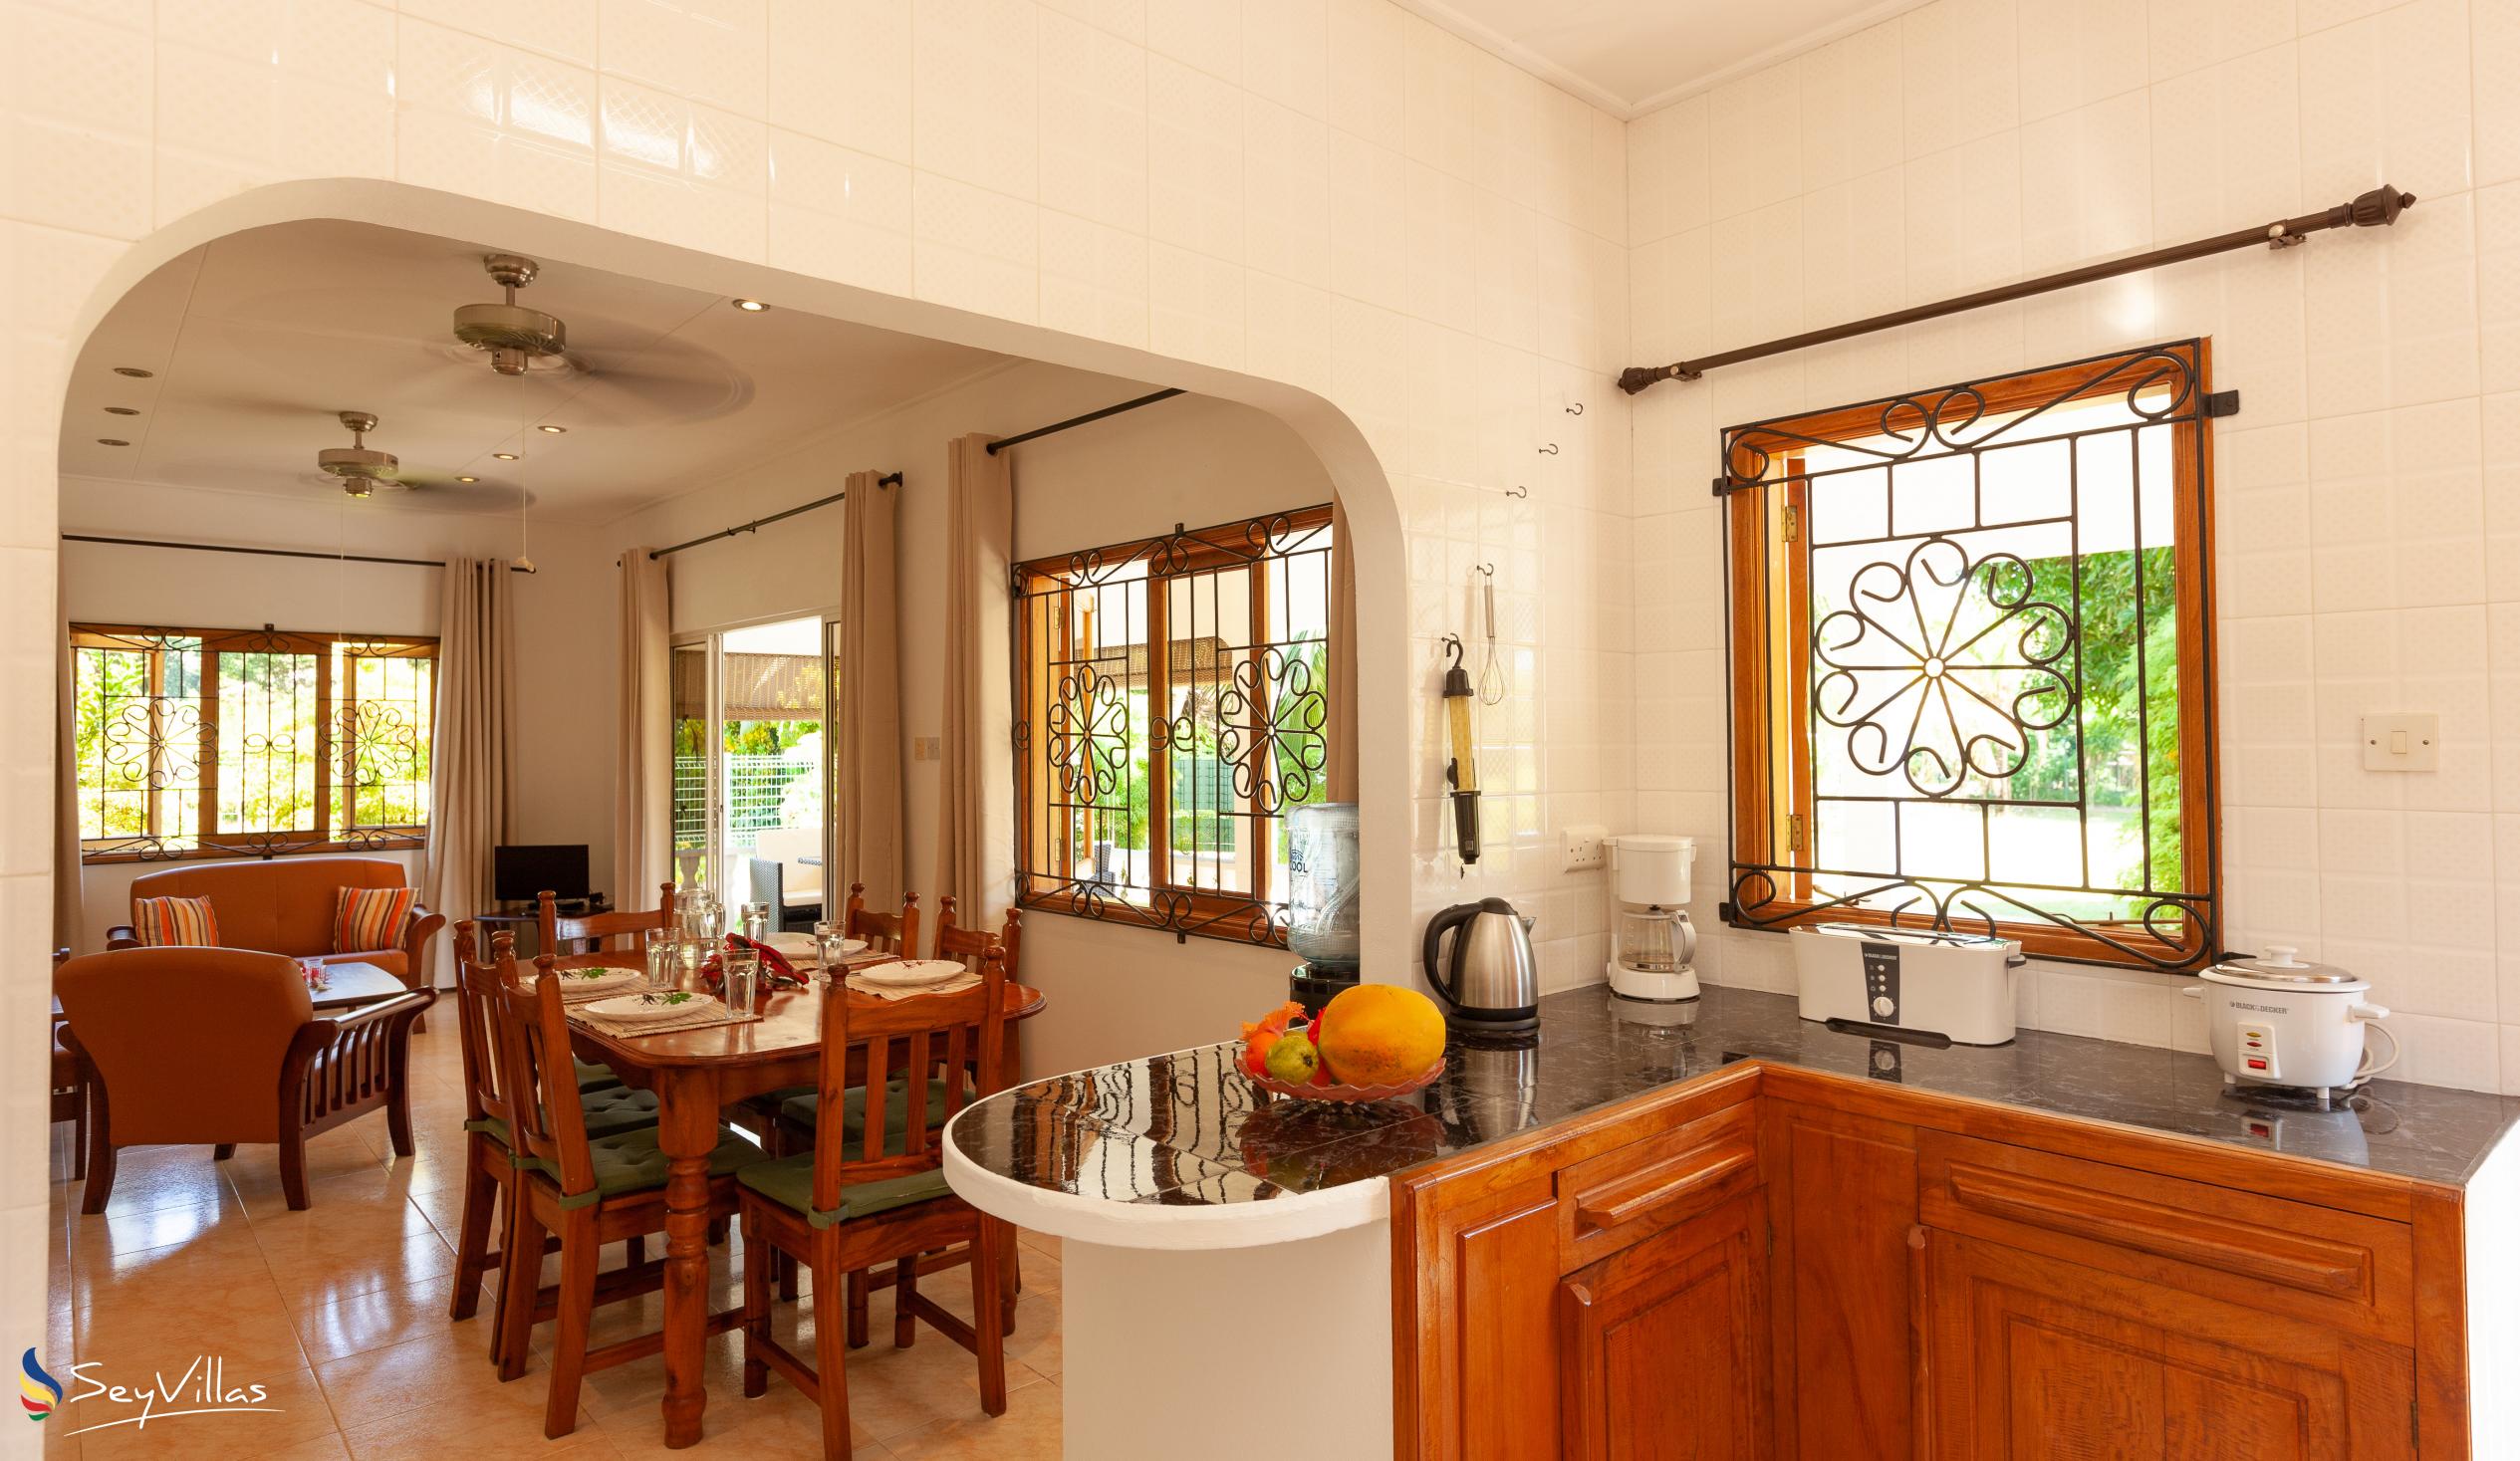 Foto 20: Chez Marlin - Maison d’hôtes de 2 chambres - Praslin (Seychelles)